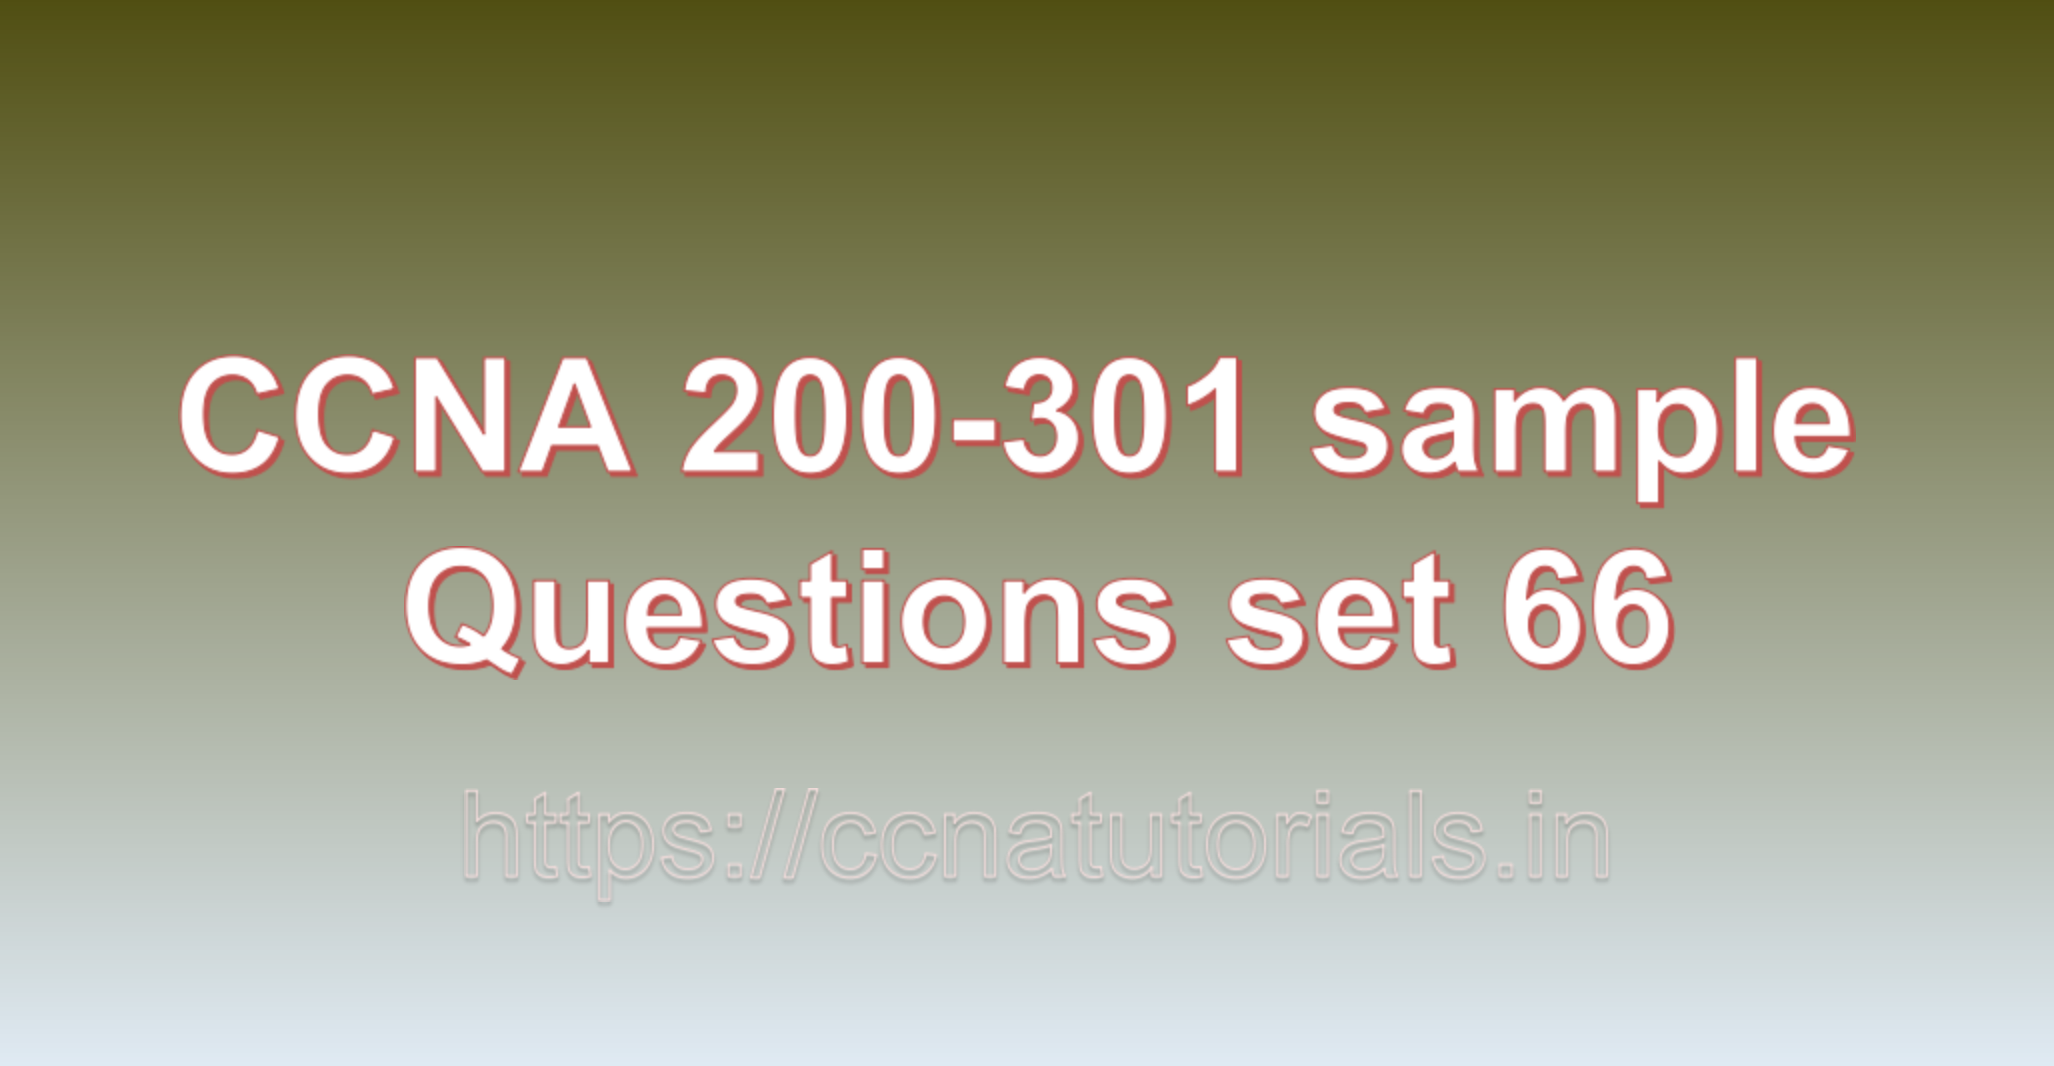 ccna sample questions set 66, ccna tutorials, CCNA Exam, ccna